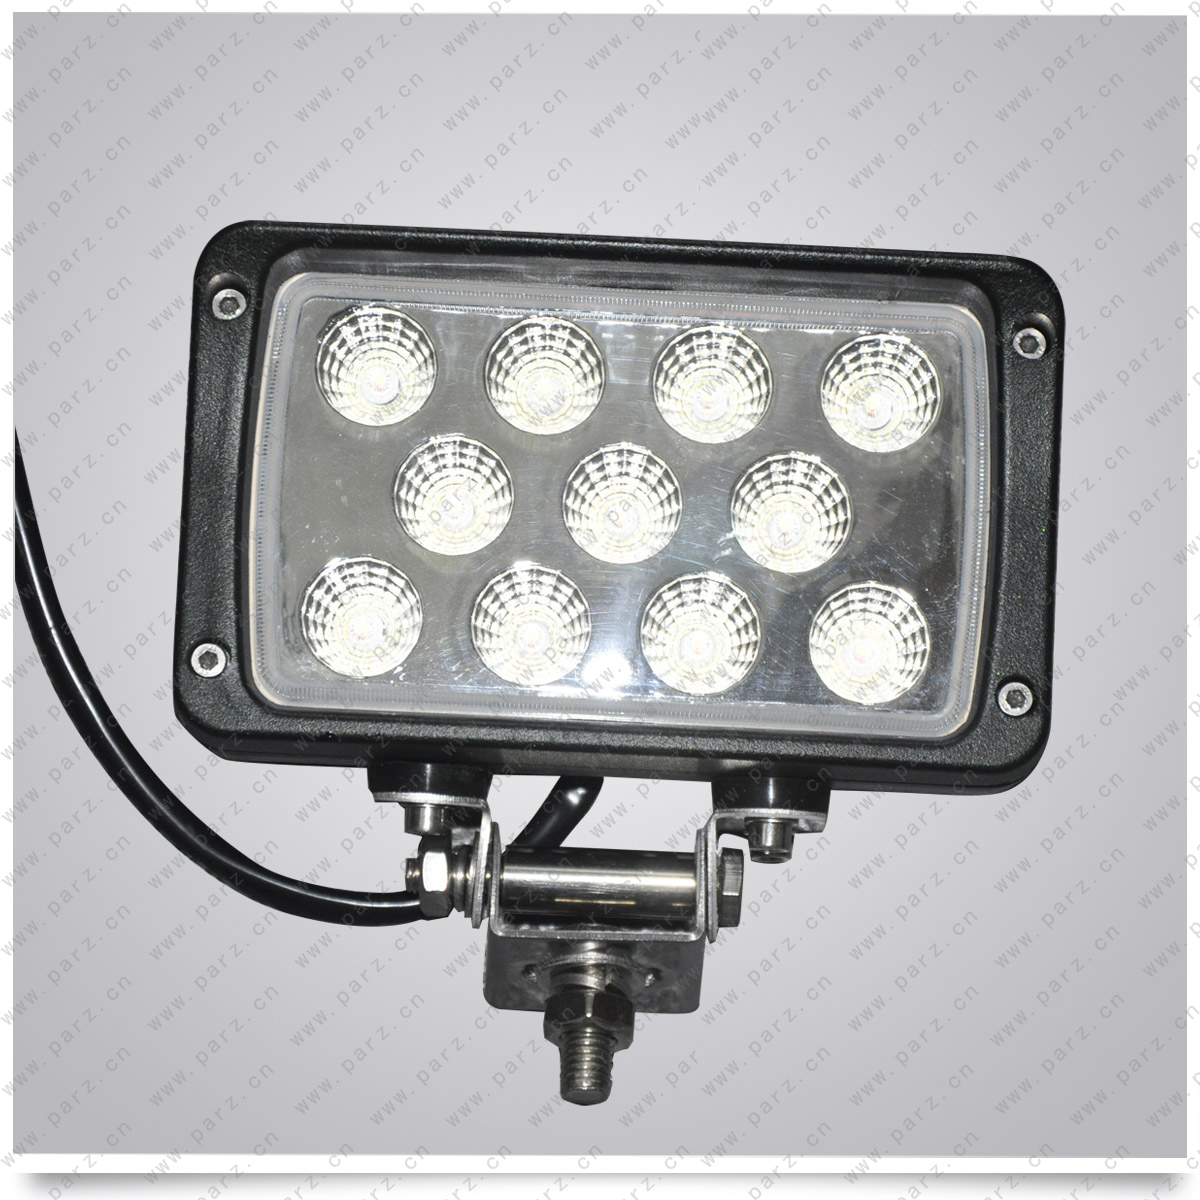 LED-1133 LED work light